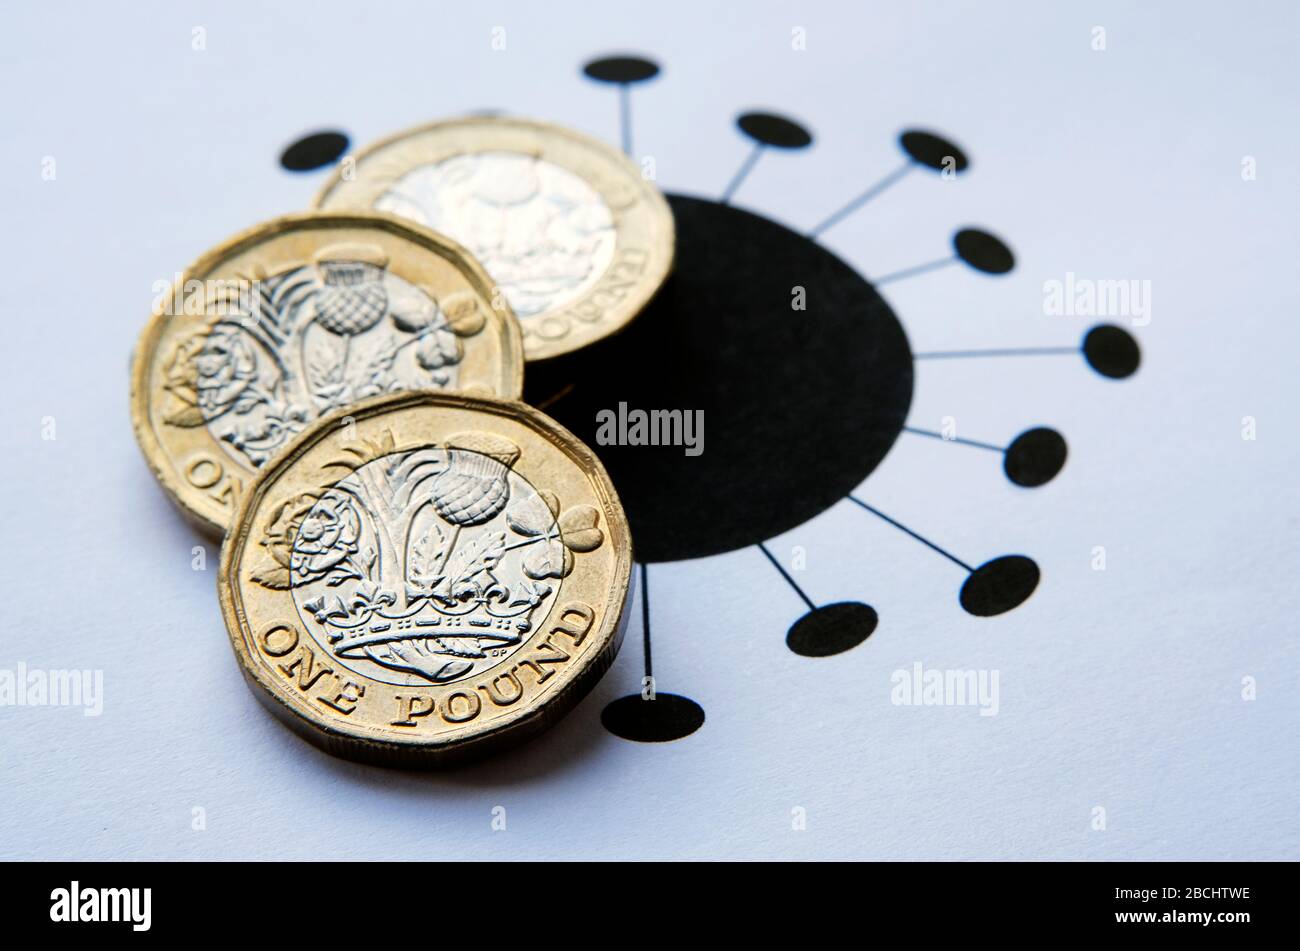 Ein Pfund Münzen auf Coronavirus COVID-19 gedruckt Abbildung platziert. Konzeptfoto für die Auswirkungen von Pandemie und Quarantäne auf die Wirtschaft. Stockfoto